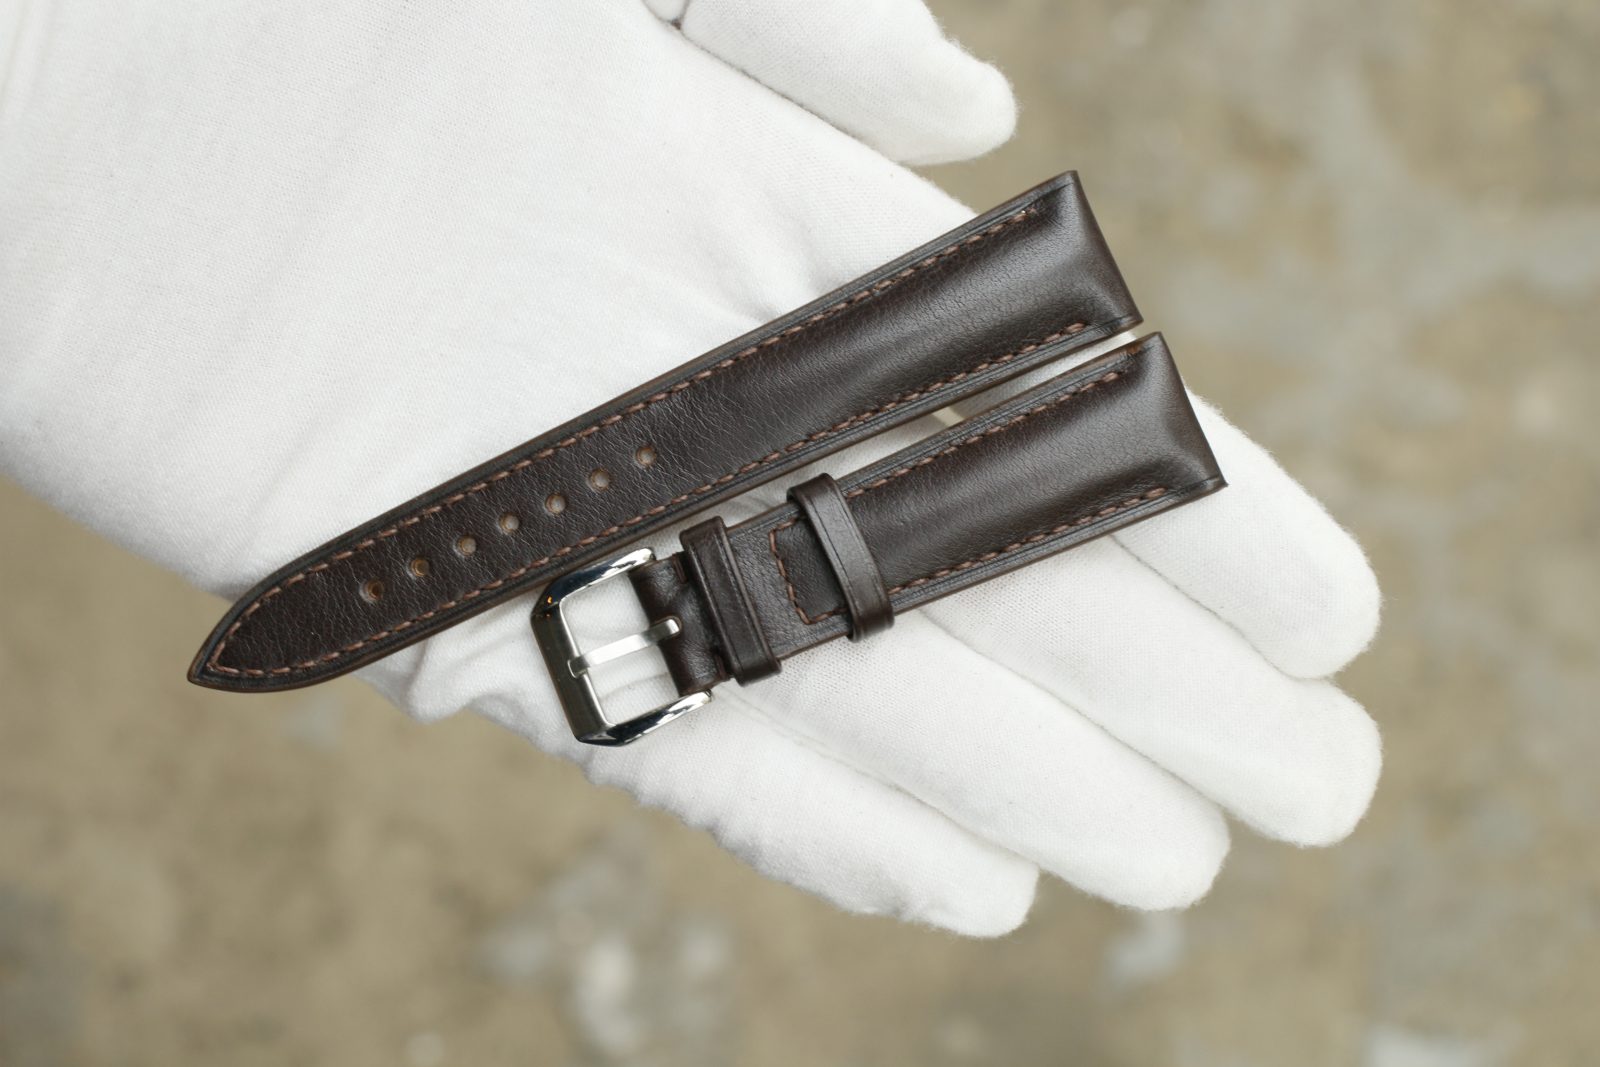 Vachetta Leather Watch Strap